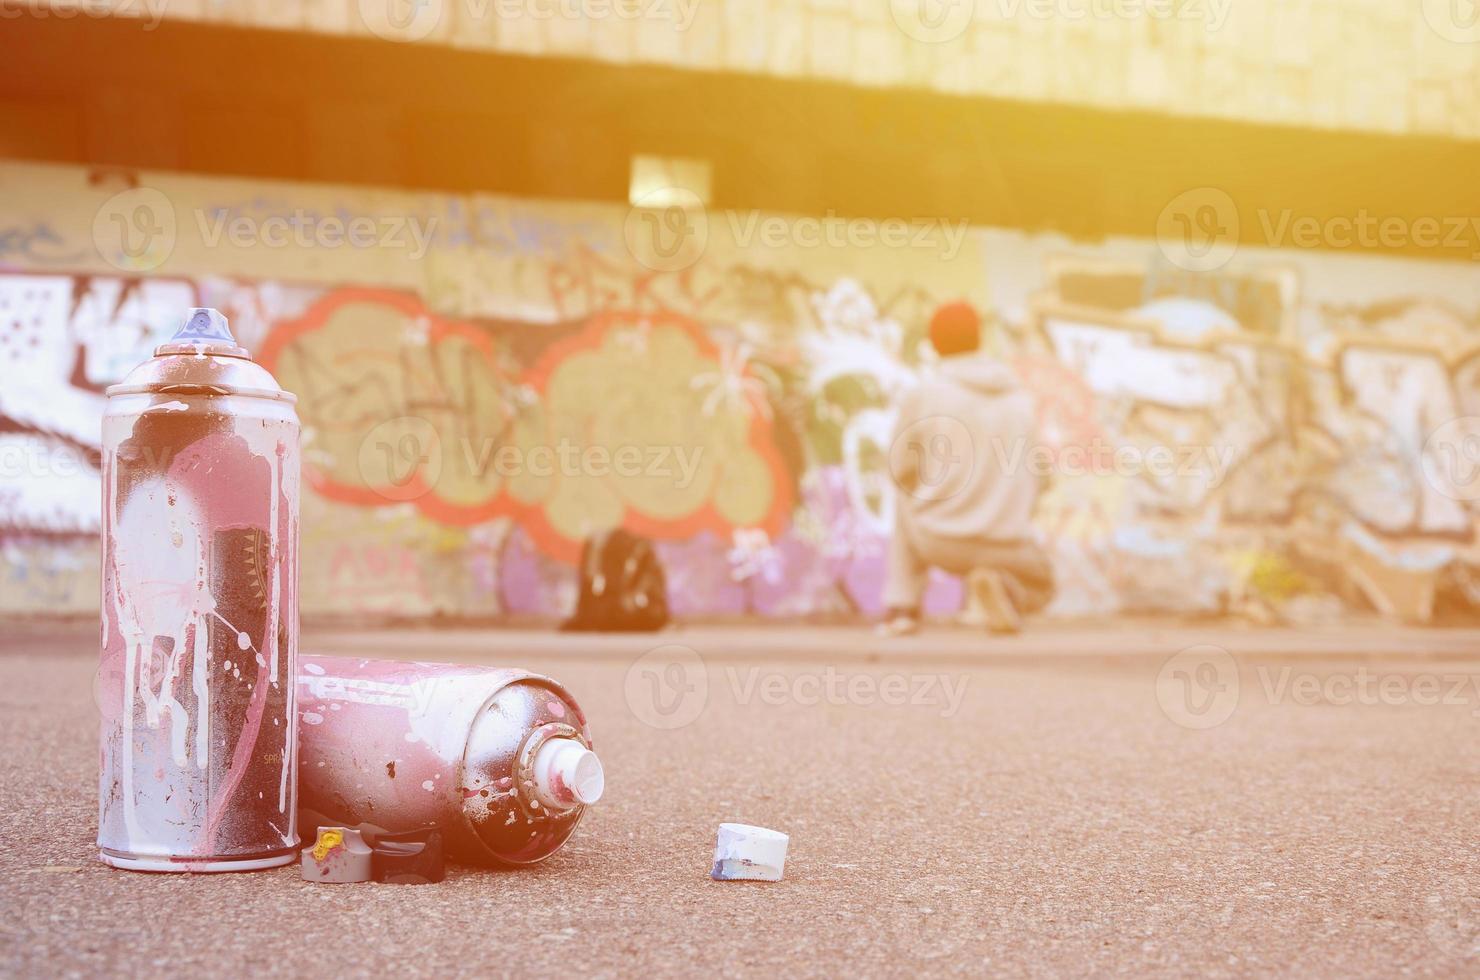 plusieurs bombes aérosols usagées avec de la peinture rose et blanche se trouvent sur l'asphalte contre le gars debout devant un mur peint dans des dessins de graffitis colorés photo